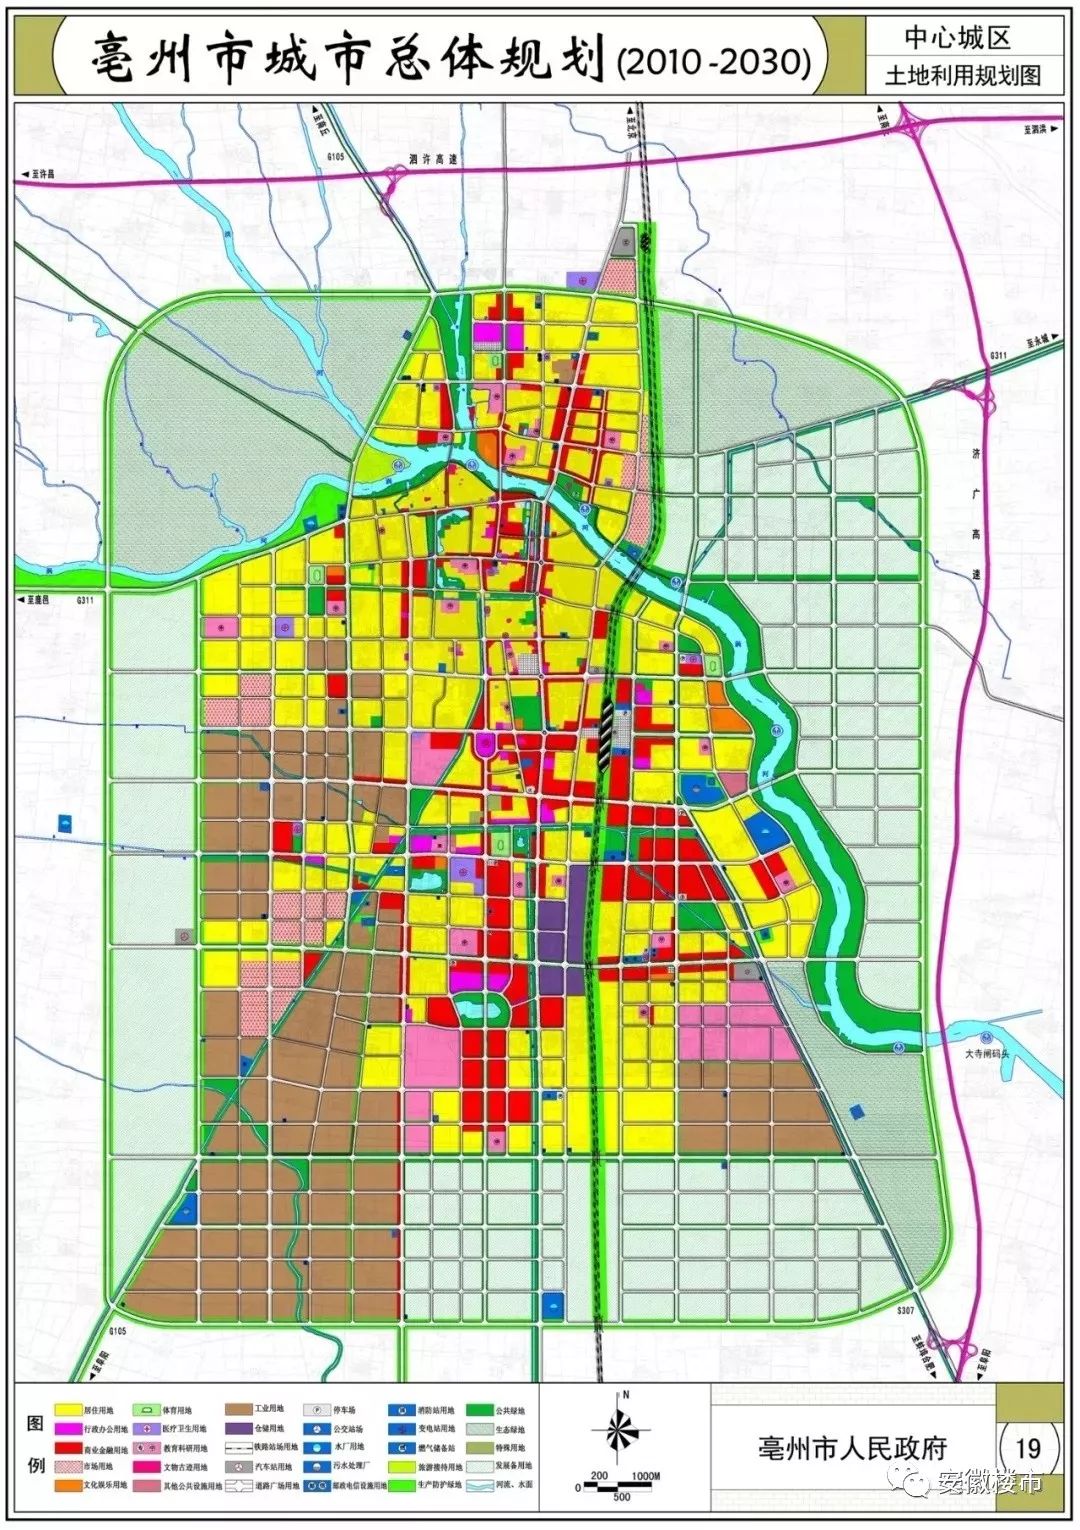 形成 《亳州市城市总体规划(2010-2030年)(2018年修改)》(草案)